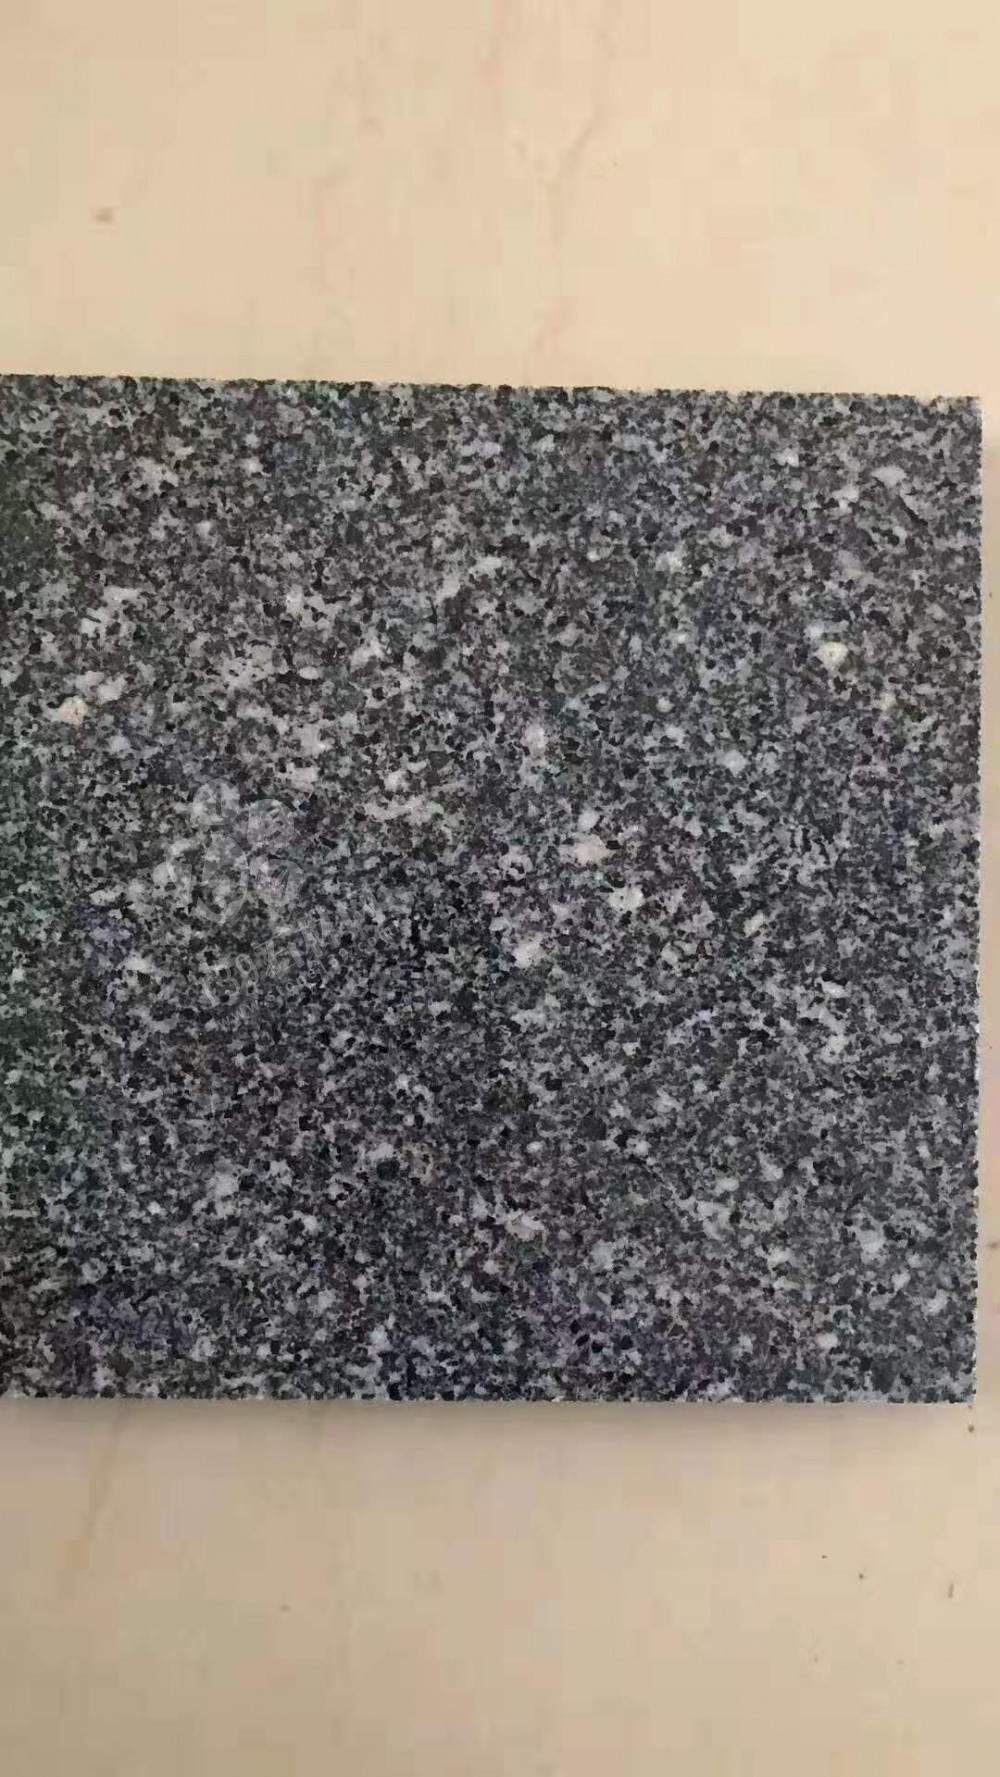 杭州芝麻黑厂家金龙石材推出江浙地区完美替代福建654的花岗岩产品